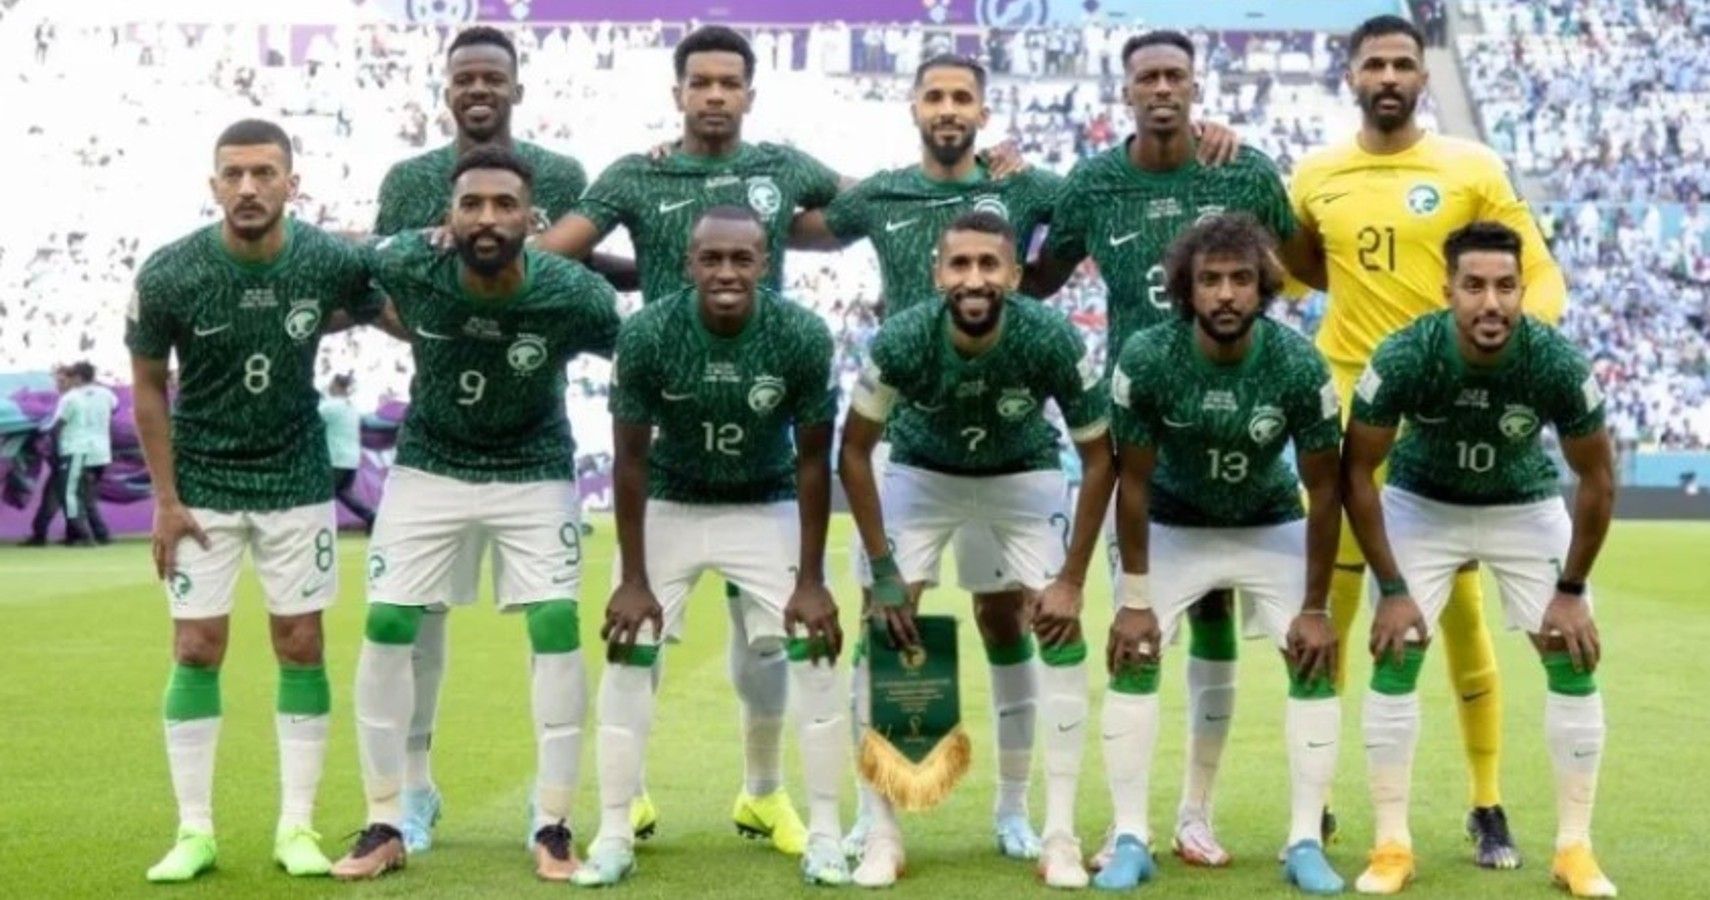 Saudi soccer team